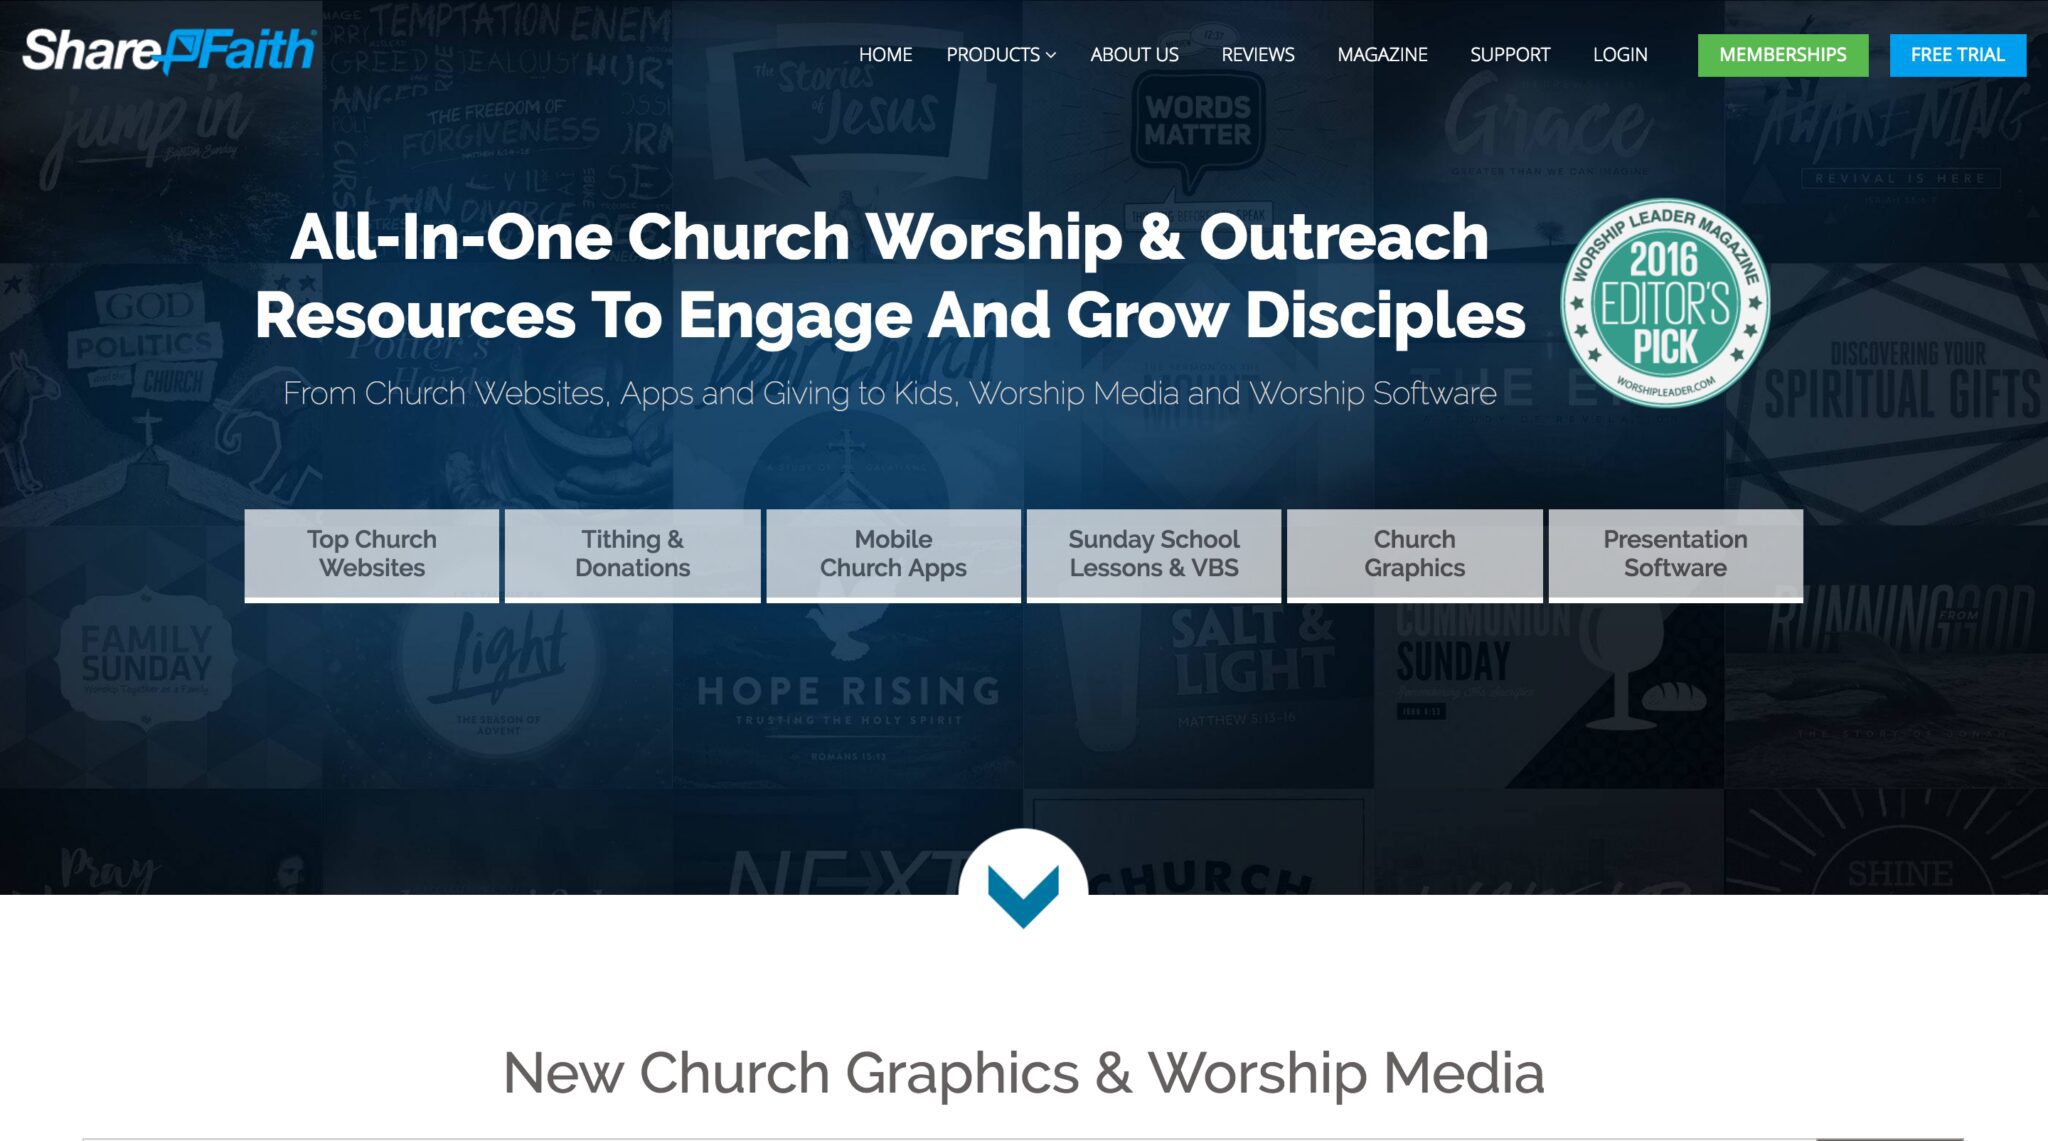 Sharefaith Church Mobile Apps